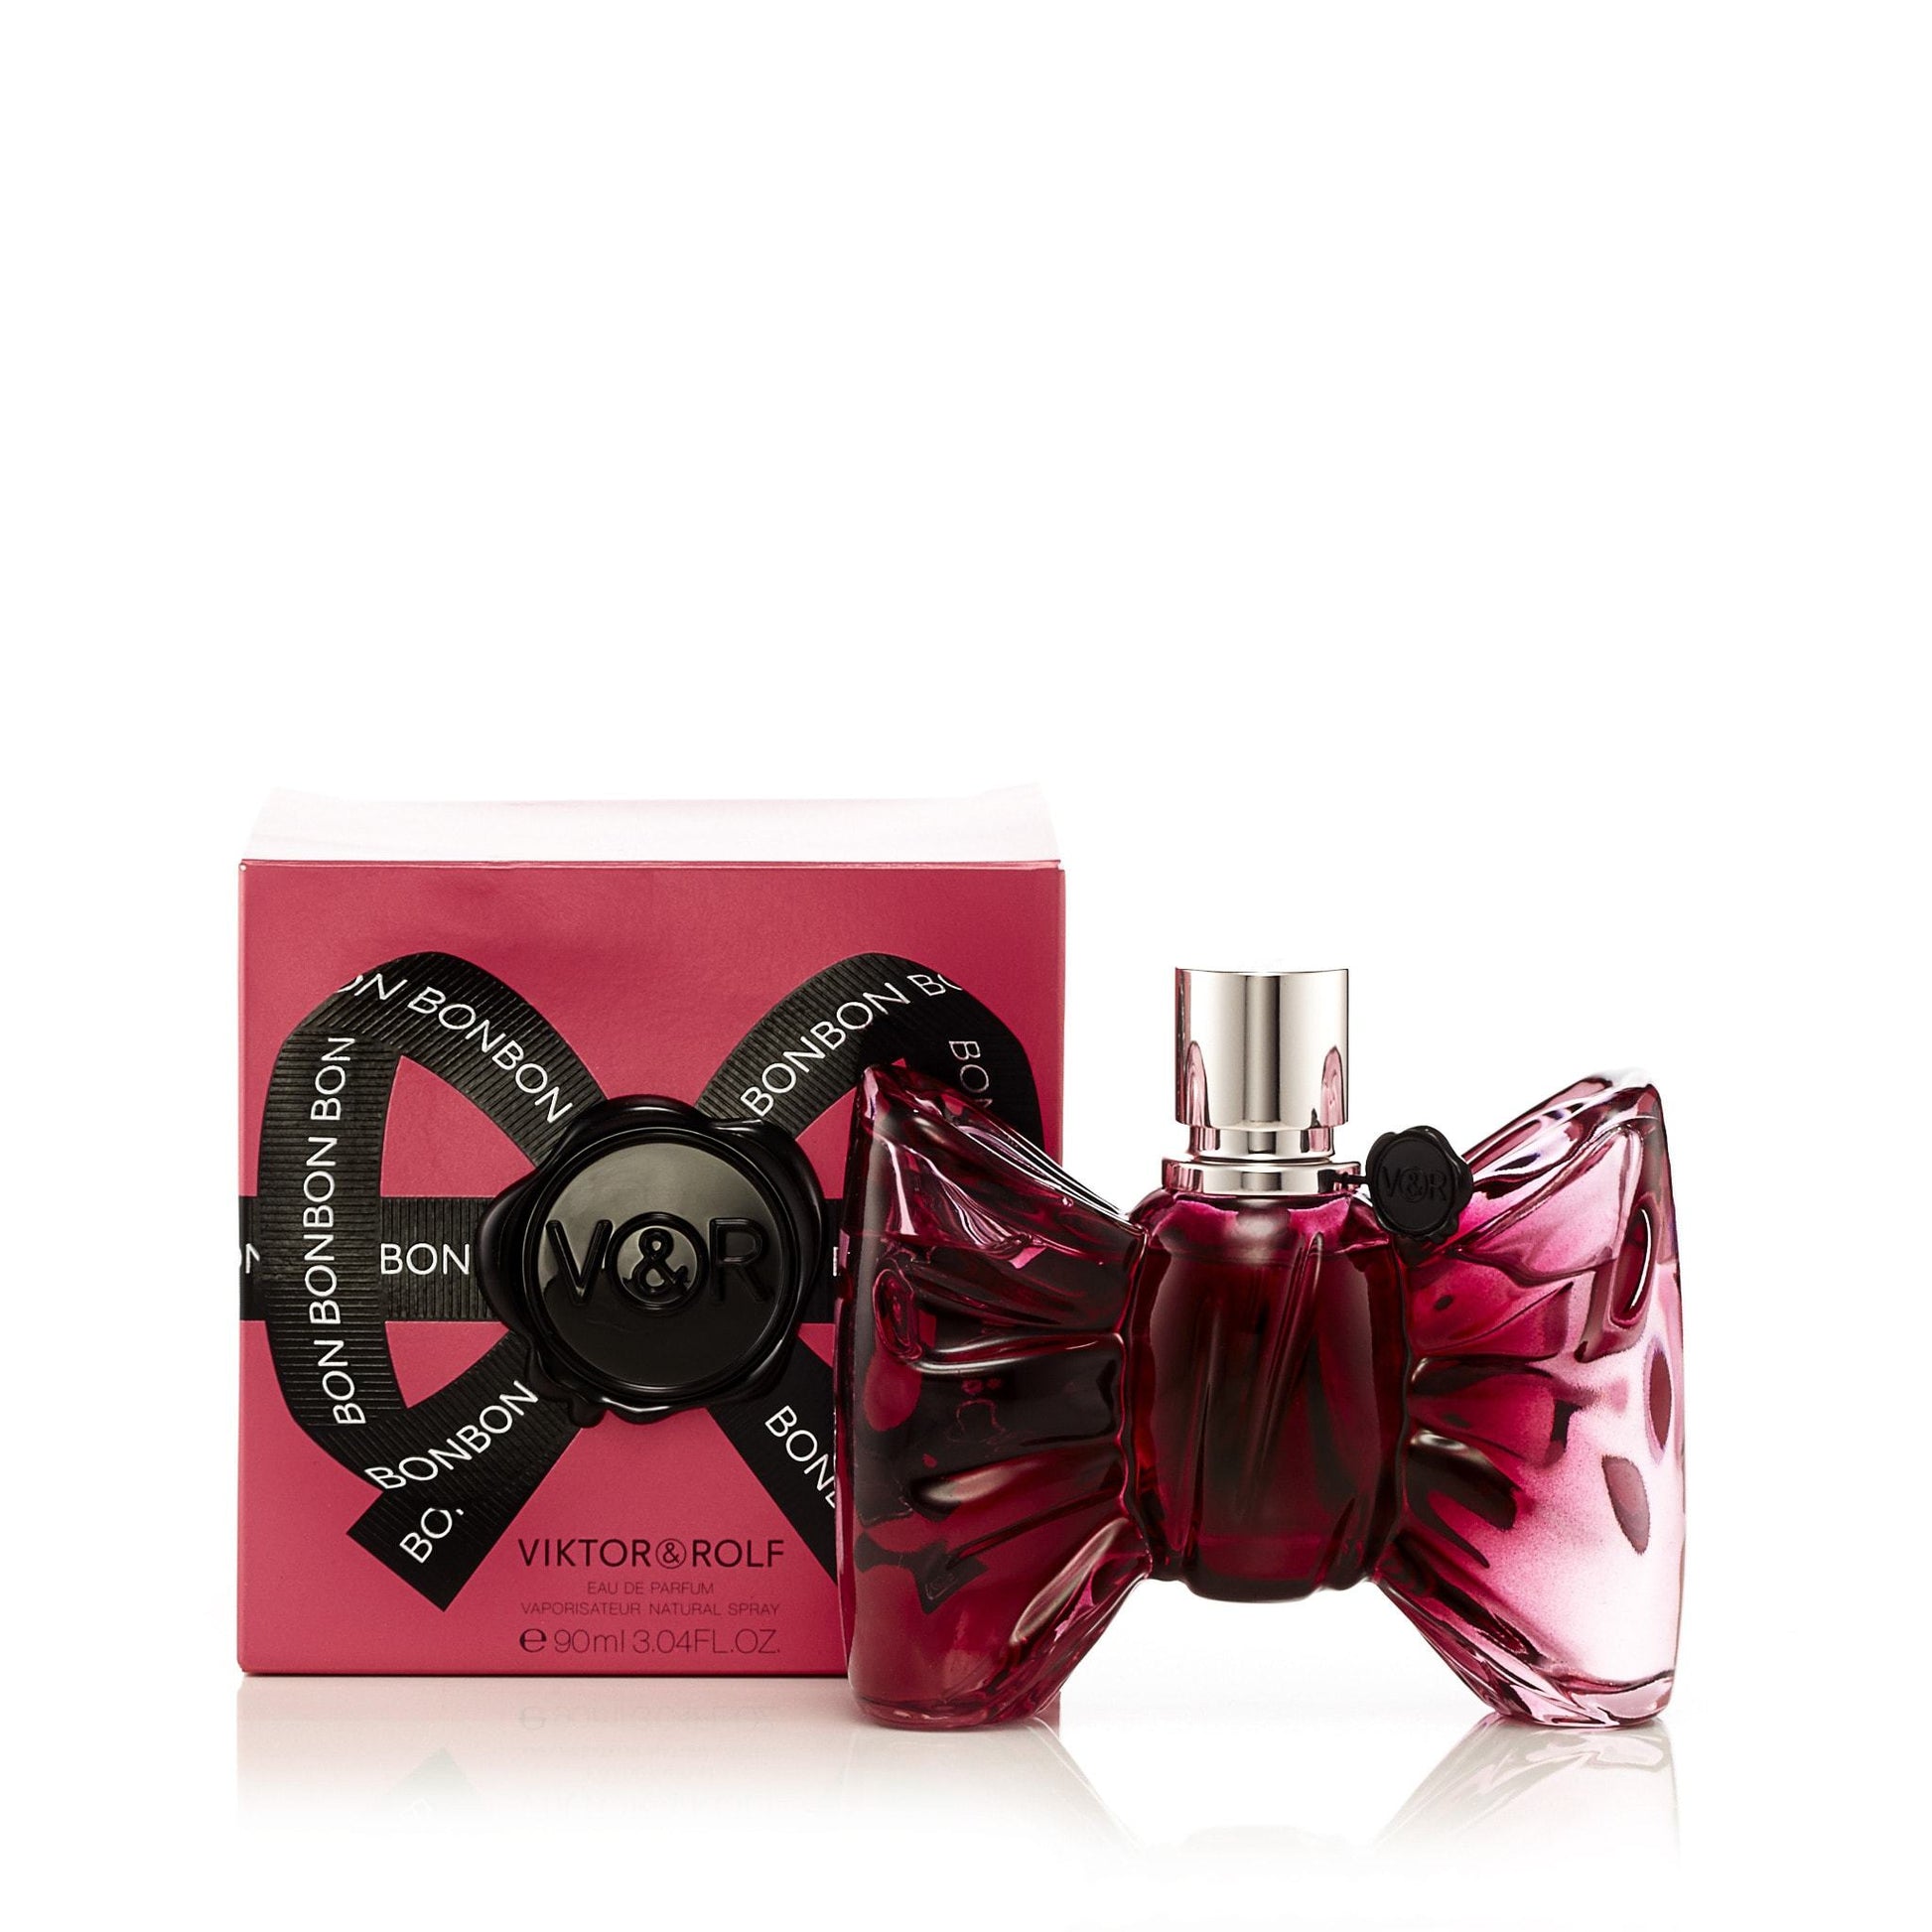 BonBon Eau de Parfum Spray for Women by Viktor & Rolf, Product image 4